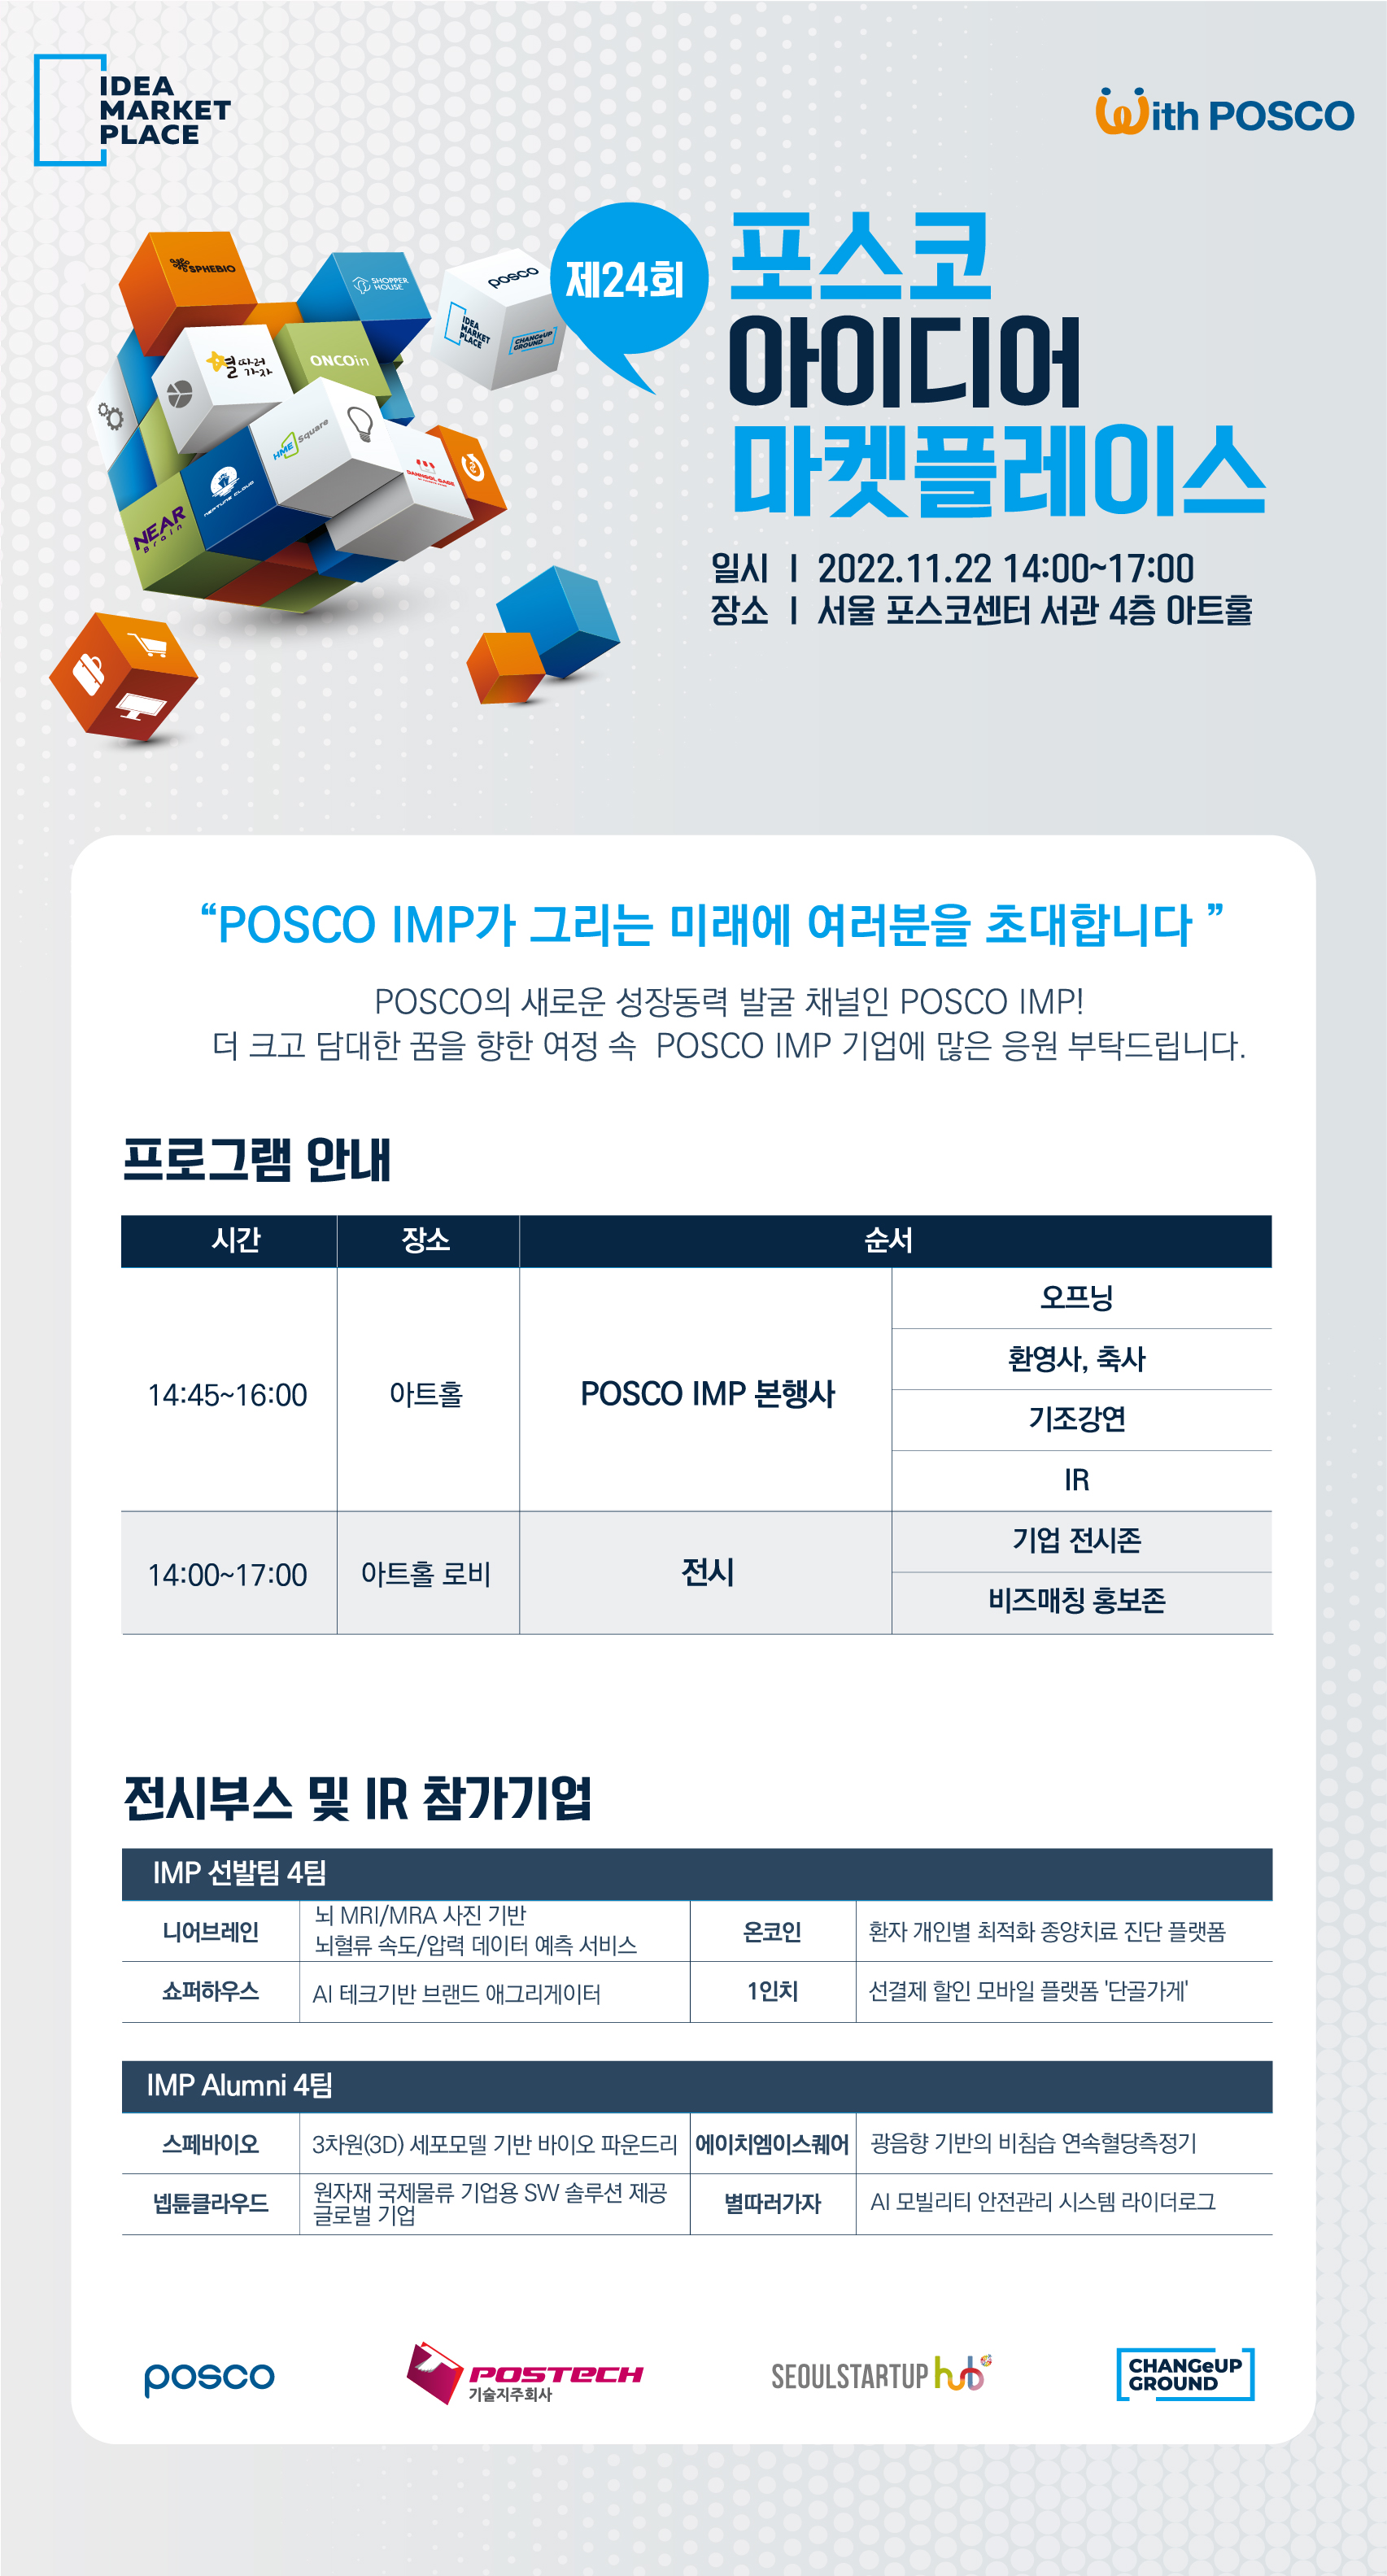 제24회 포스코 아이디어 마켓플레이스 22년 11월 22일 14:00~17:00 서울 포스코센터 서관 4층 아트홀 "POSCO IMP가 그리는 미래에 여러분을 초대합니다." POSCO의 새로운 성장동력 발굴 채널이 POSCO IMP! 더 크고 담대한 꿈을 향한 여정 속 POSCO IMP 기업에 많은 응원 부탁드립니다. 프로그램 안내 14:45~16:00 아트홀에서 POSCO IMP 본 행사 오프닝, 환영사, 축사, 기조강연, IR, 14:00~17:00 아트홀 로비에서 전시 기업 전시존 비즈매칭 홍보존/ 전시부스 및 IR 참가 기업 IMP 선발팀 4팀 1. 니어브레인 : 뇌 MT/MRA 사진 기반, 뇌혈류 속도/ 압력 데이터 예측 서비스 2. 온코인 : 환자 개인별 종양치료 진단 플랫폼 3. 쇼퍼 하우스 : AI 테크기반 브랜드 애그리게이터 4. 1인치 : 선결제 할인 모바일 플랫폼 '단골가게'/ IMP ALUMNI 4팀 스페바이오 : 3차원(3D) 세포모델 기반 바이오 파운드리 2. 에이치엠이스퀘어 : 광음향 기반의 비참습 연속혈당측정기 3. 넵튠클라우드 : 원자재 국제물류기업용 SW솔루션 제공 글로벌 기업 4. 별따러가자 : AI 모빌리티 안전관리 시스템 라이더 로그이다.